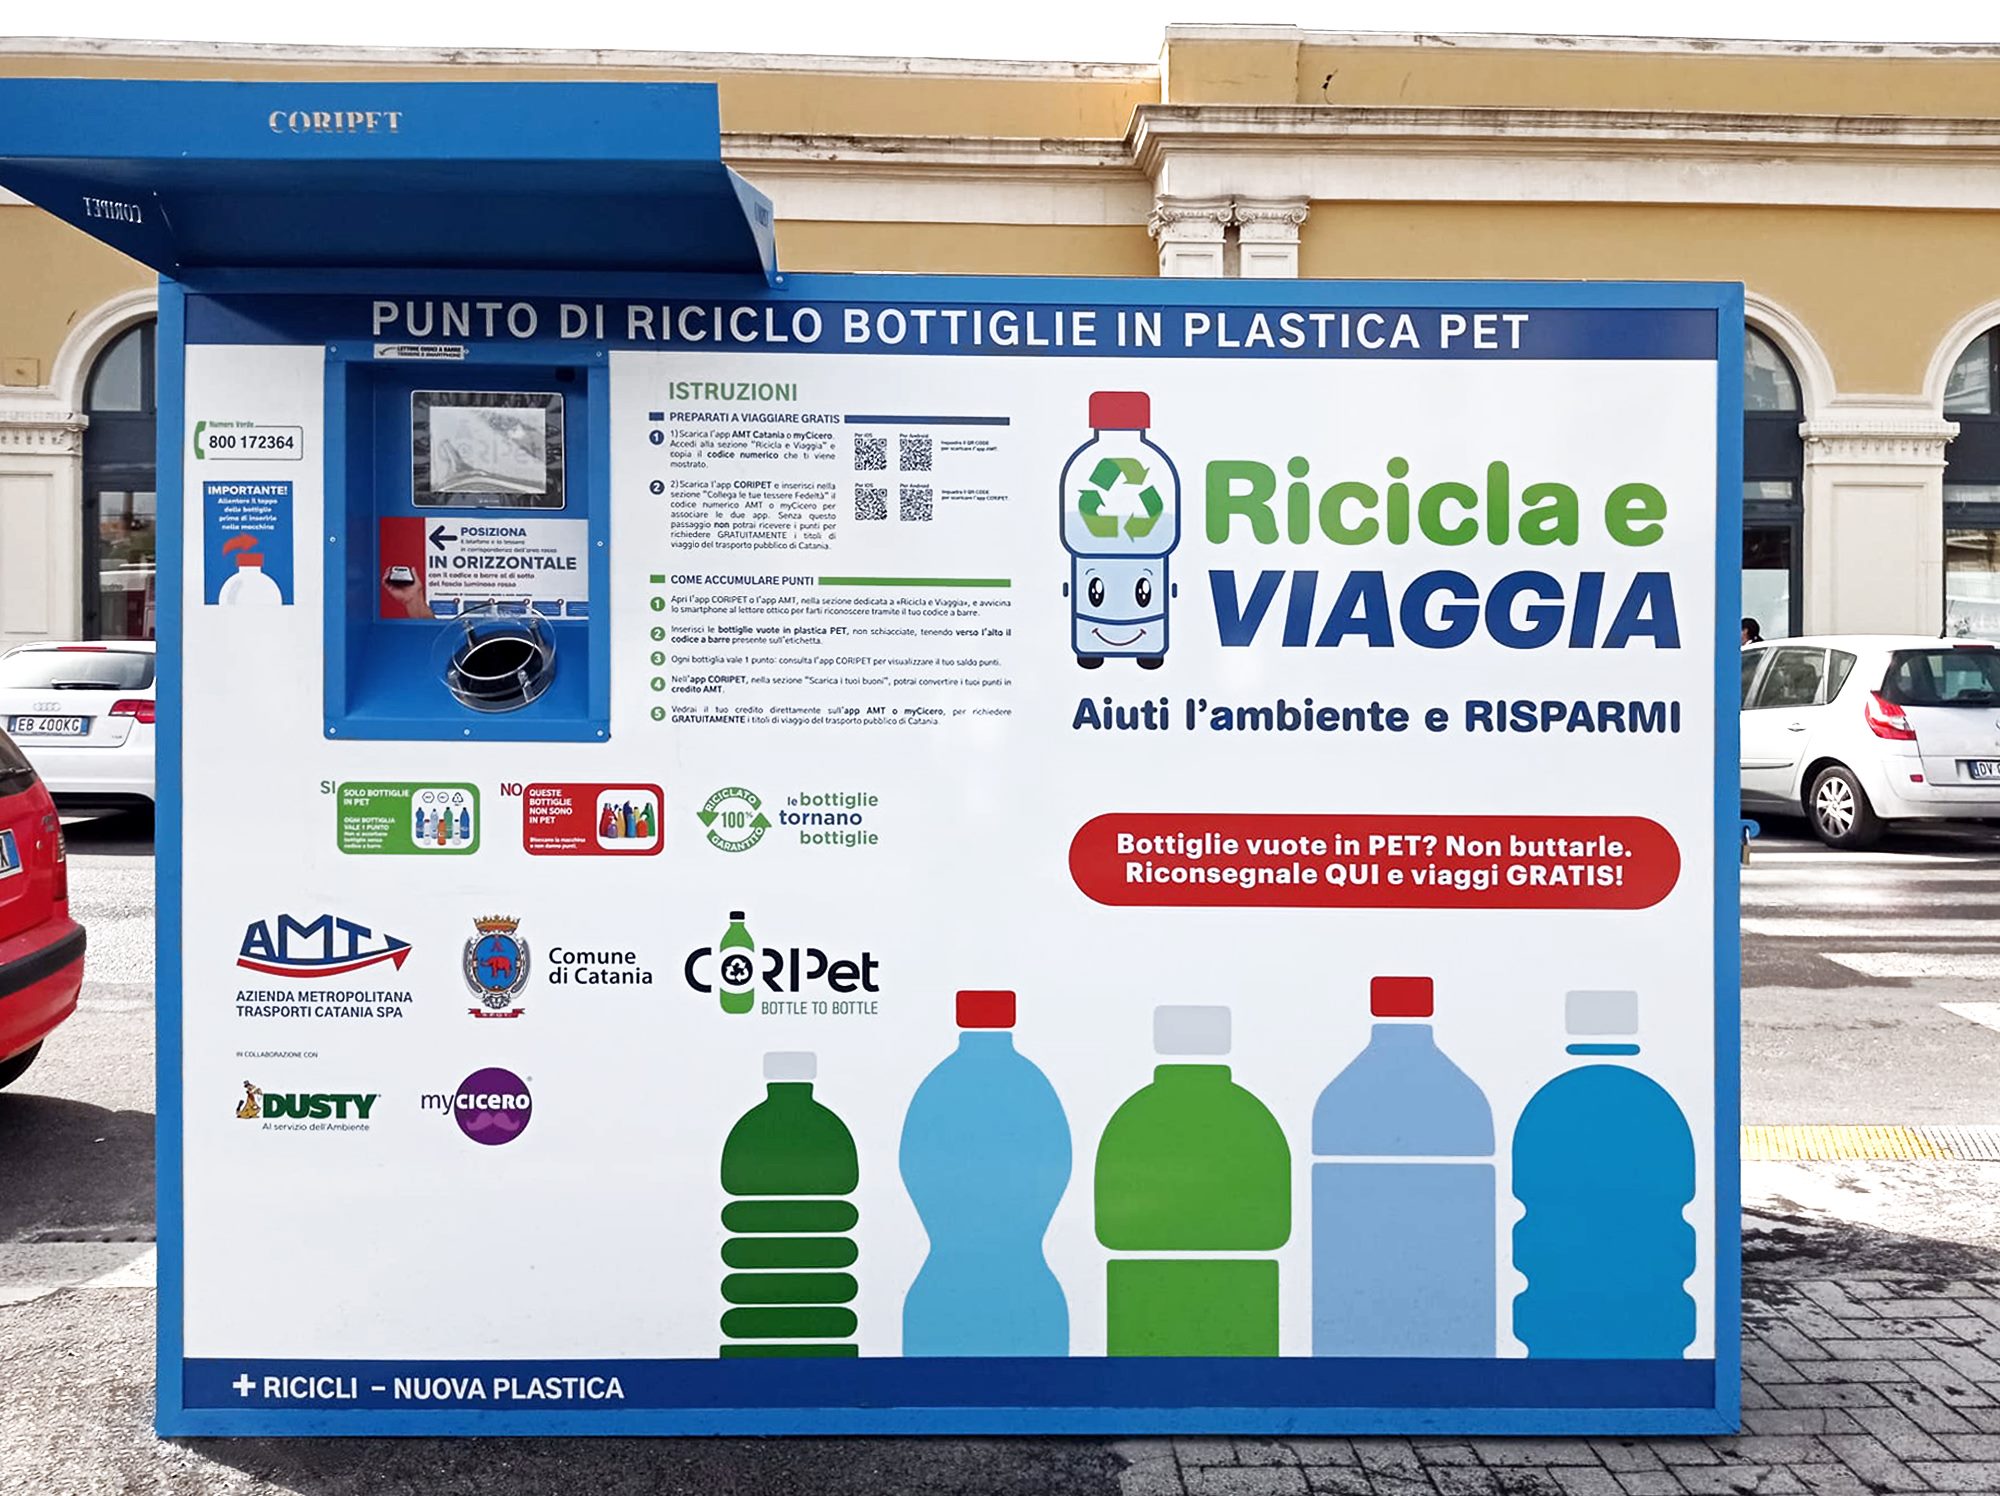 Installata a Palermo la macchina “mangiaplastica”: per ogni bottiglia si ottengono buoni sconto